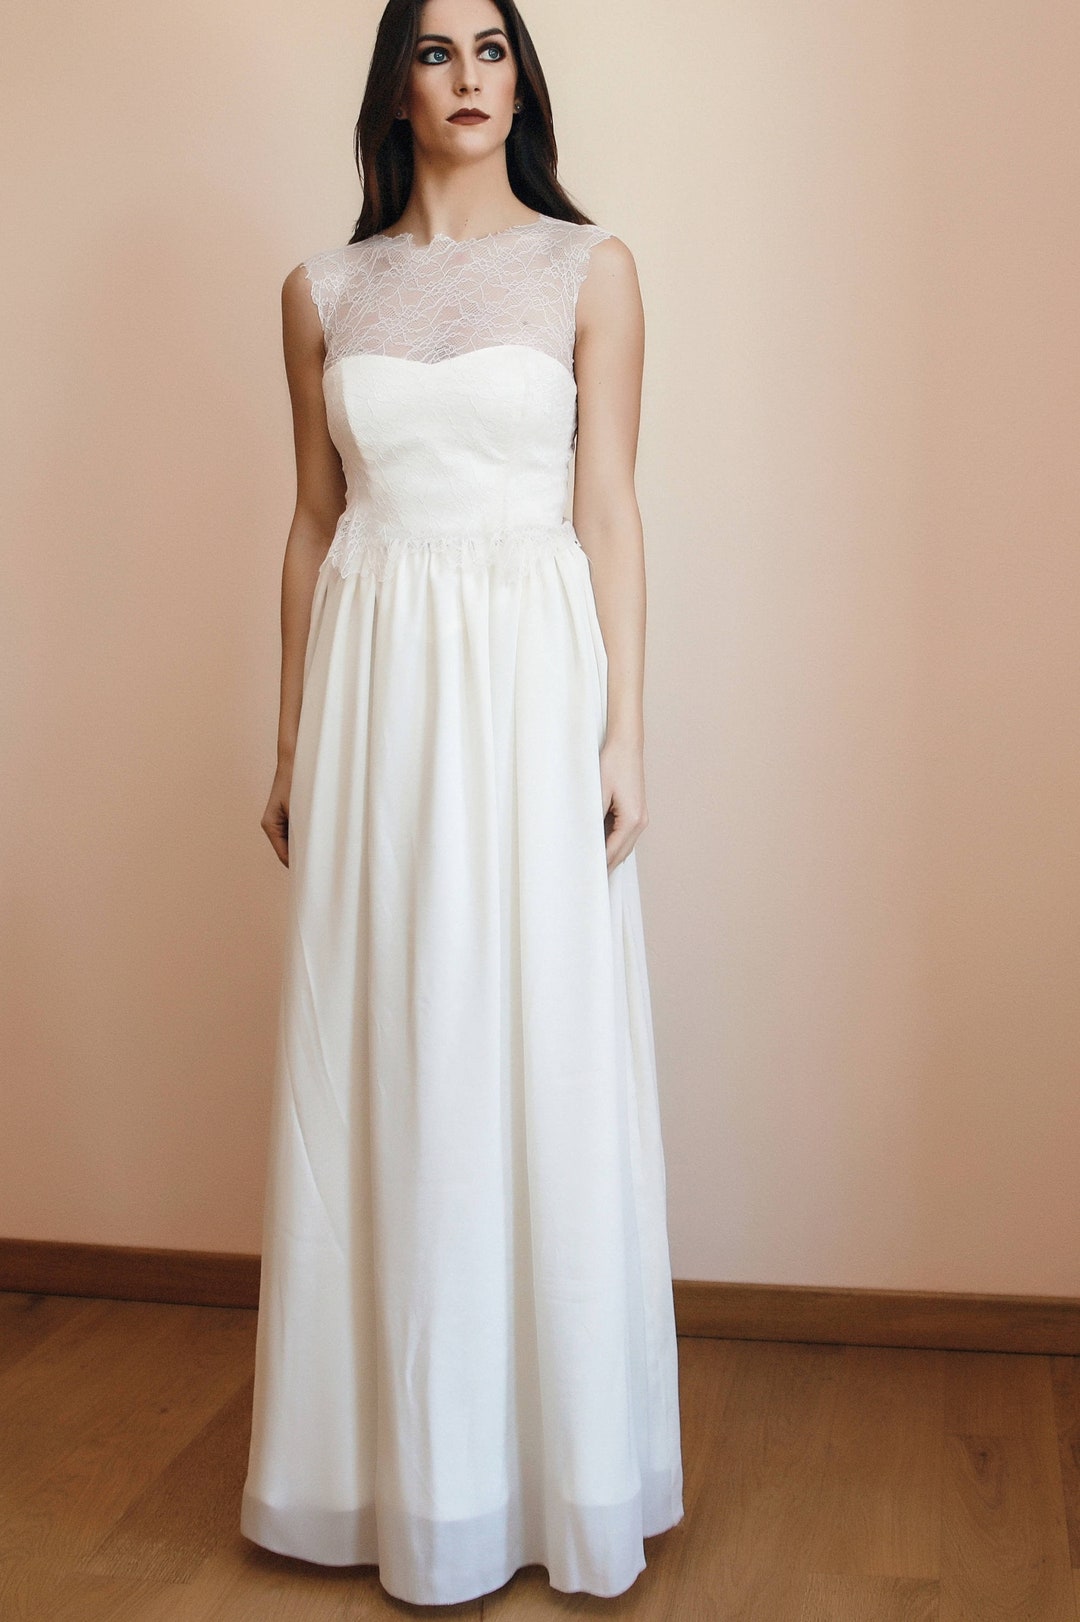 White Wedding Long Skirt in Silk Ivory Bridal Skirt Curled - Etsy